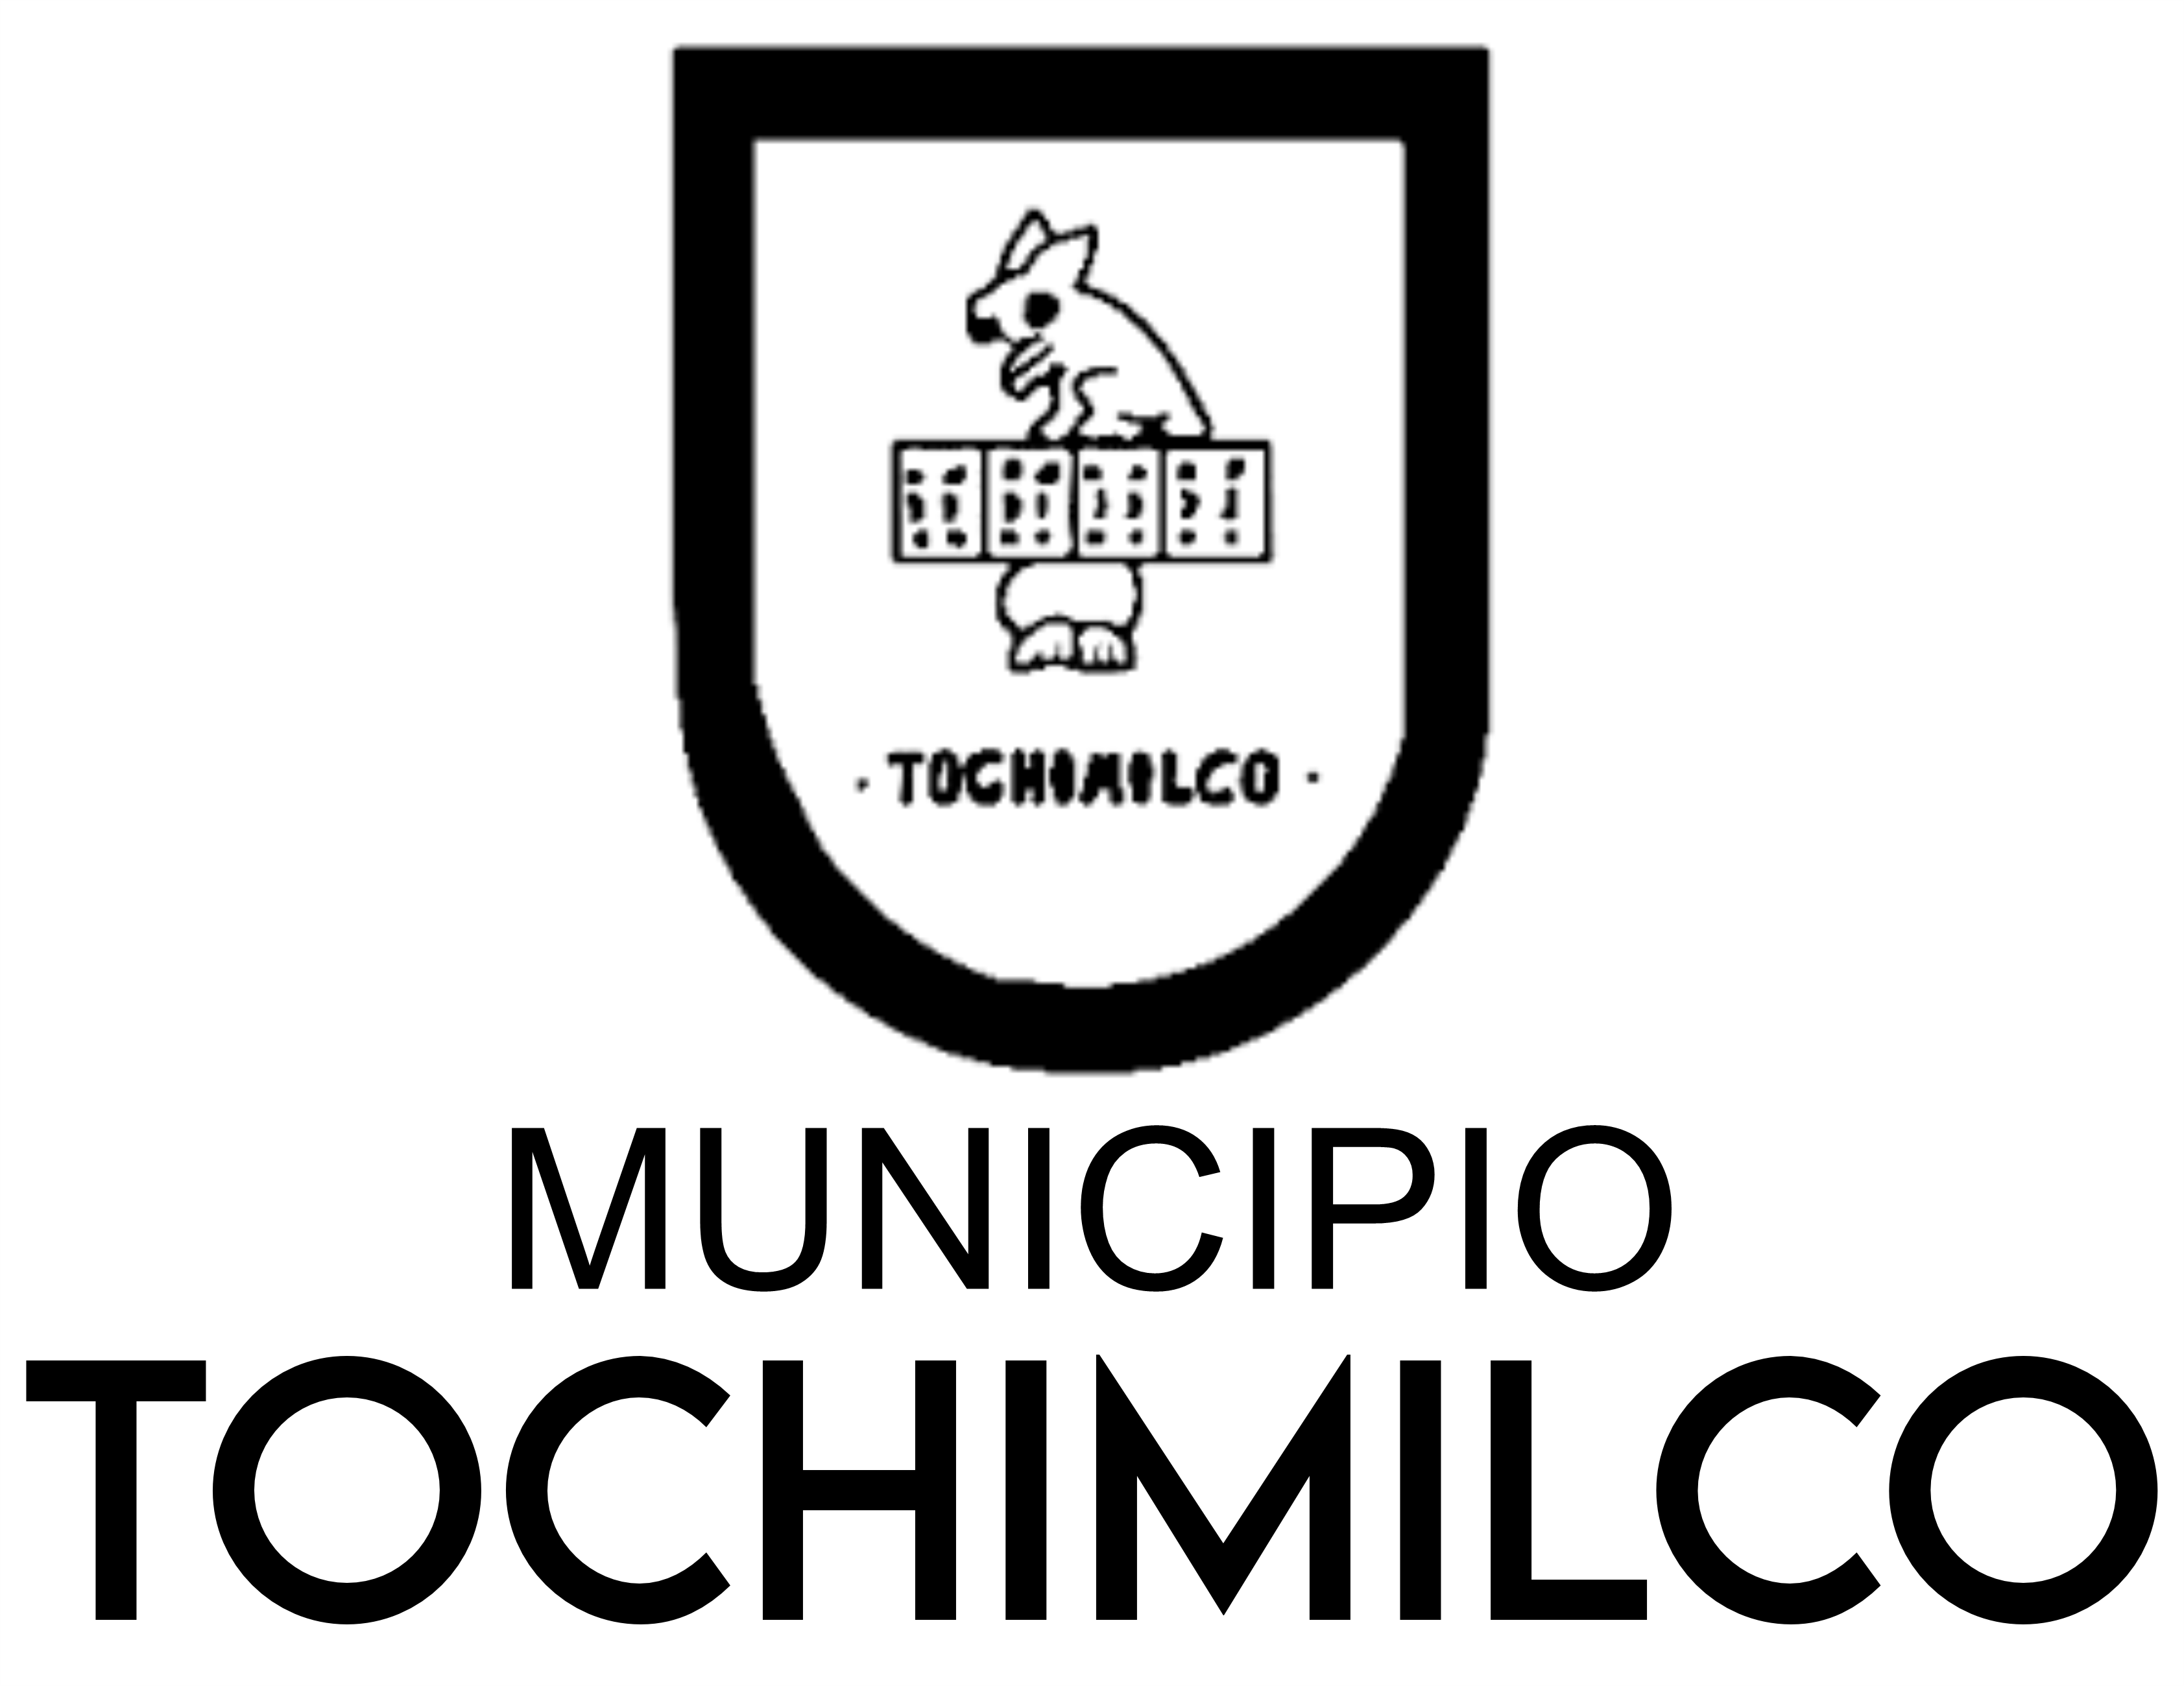 Tochimilco